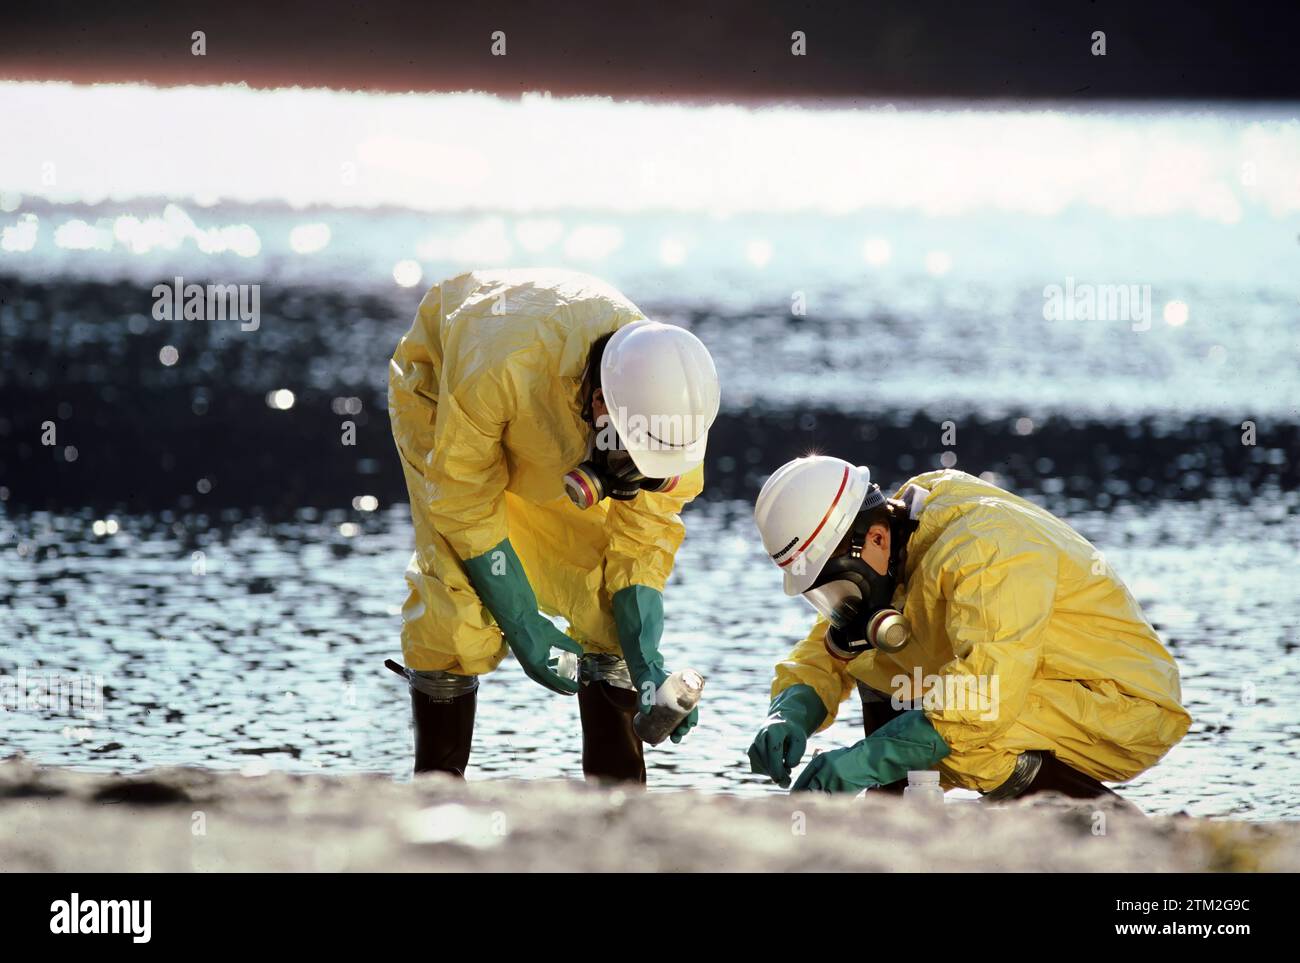 Zwei Techniker, die Schutzkleidung tragen, untersuchen giftige Abfälle, die an einem Flussufer gefunden wurden Stockfoto